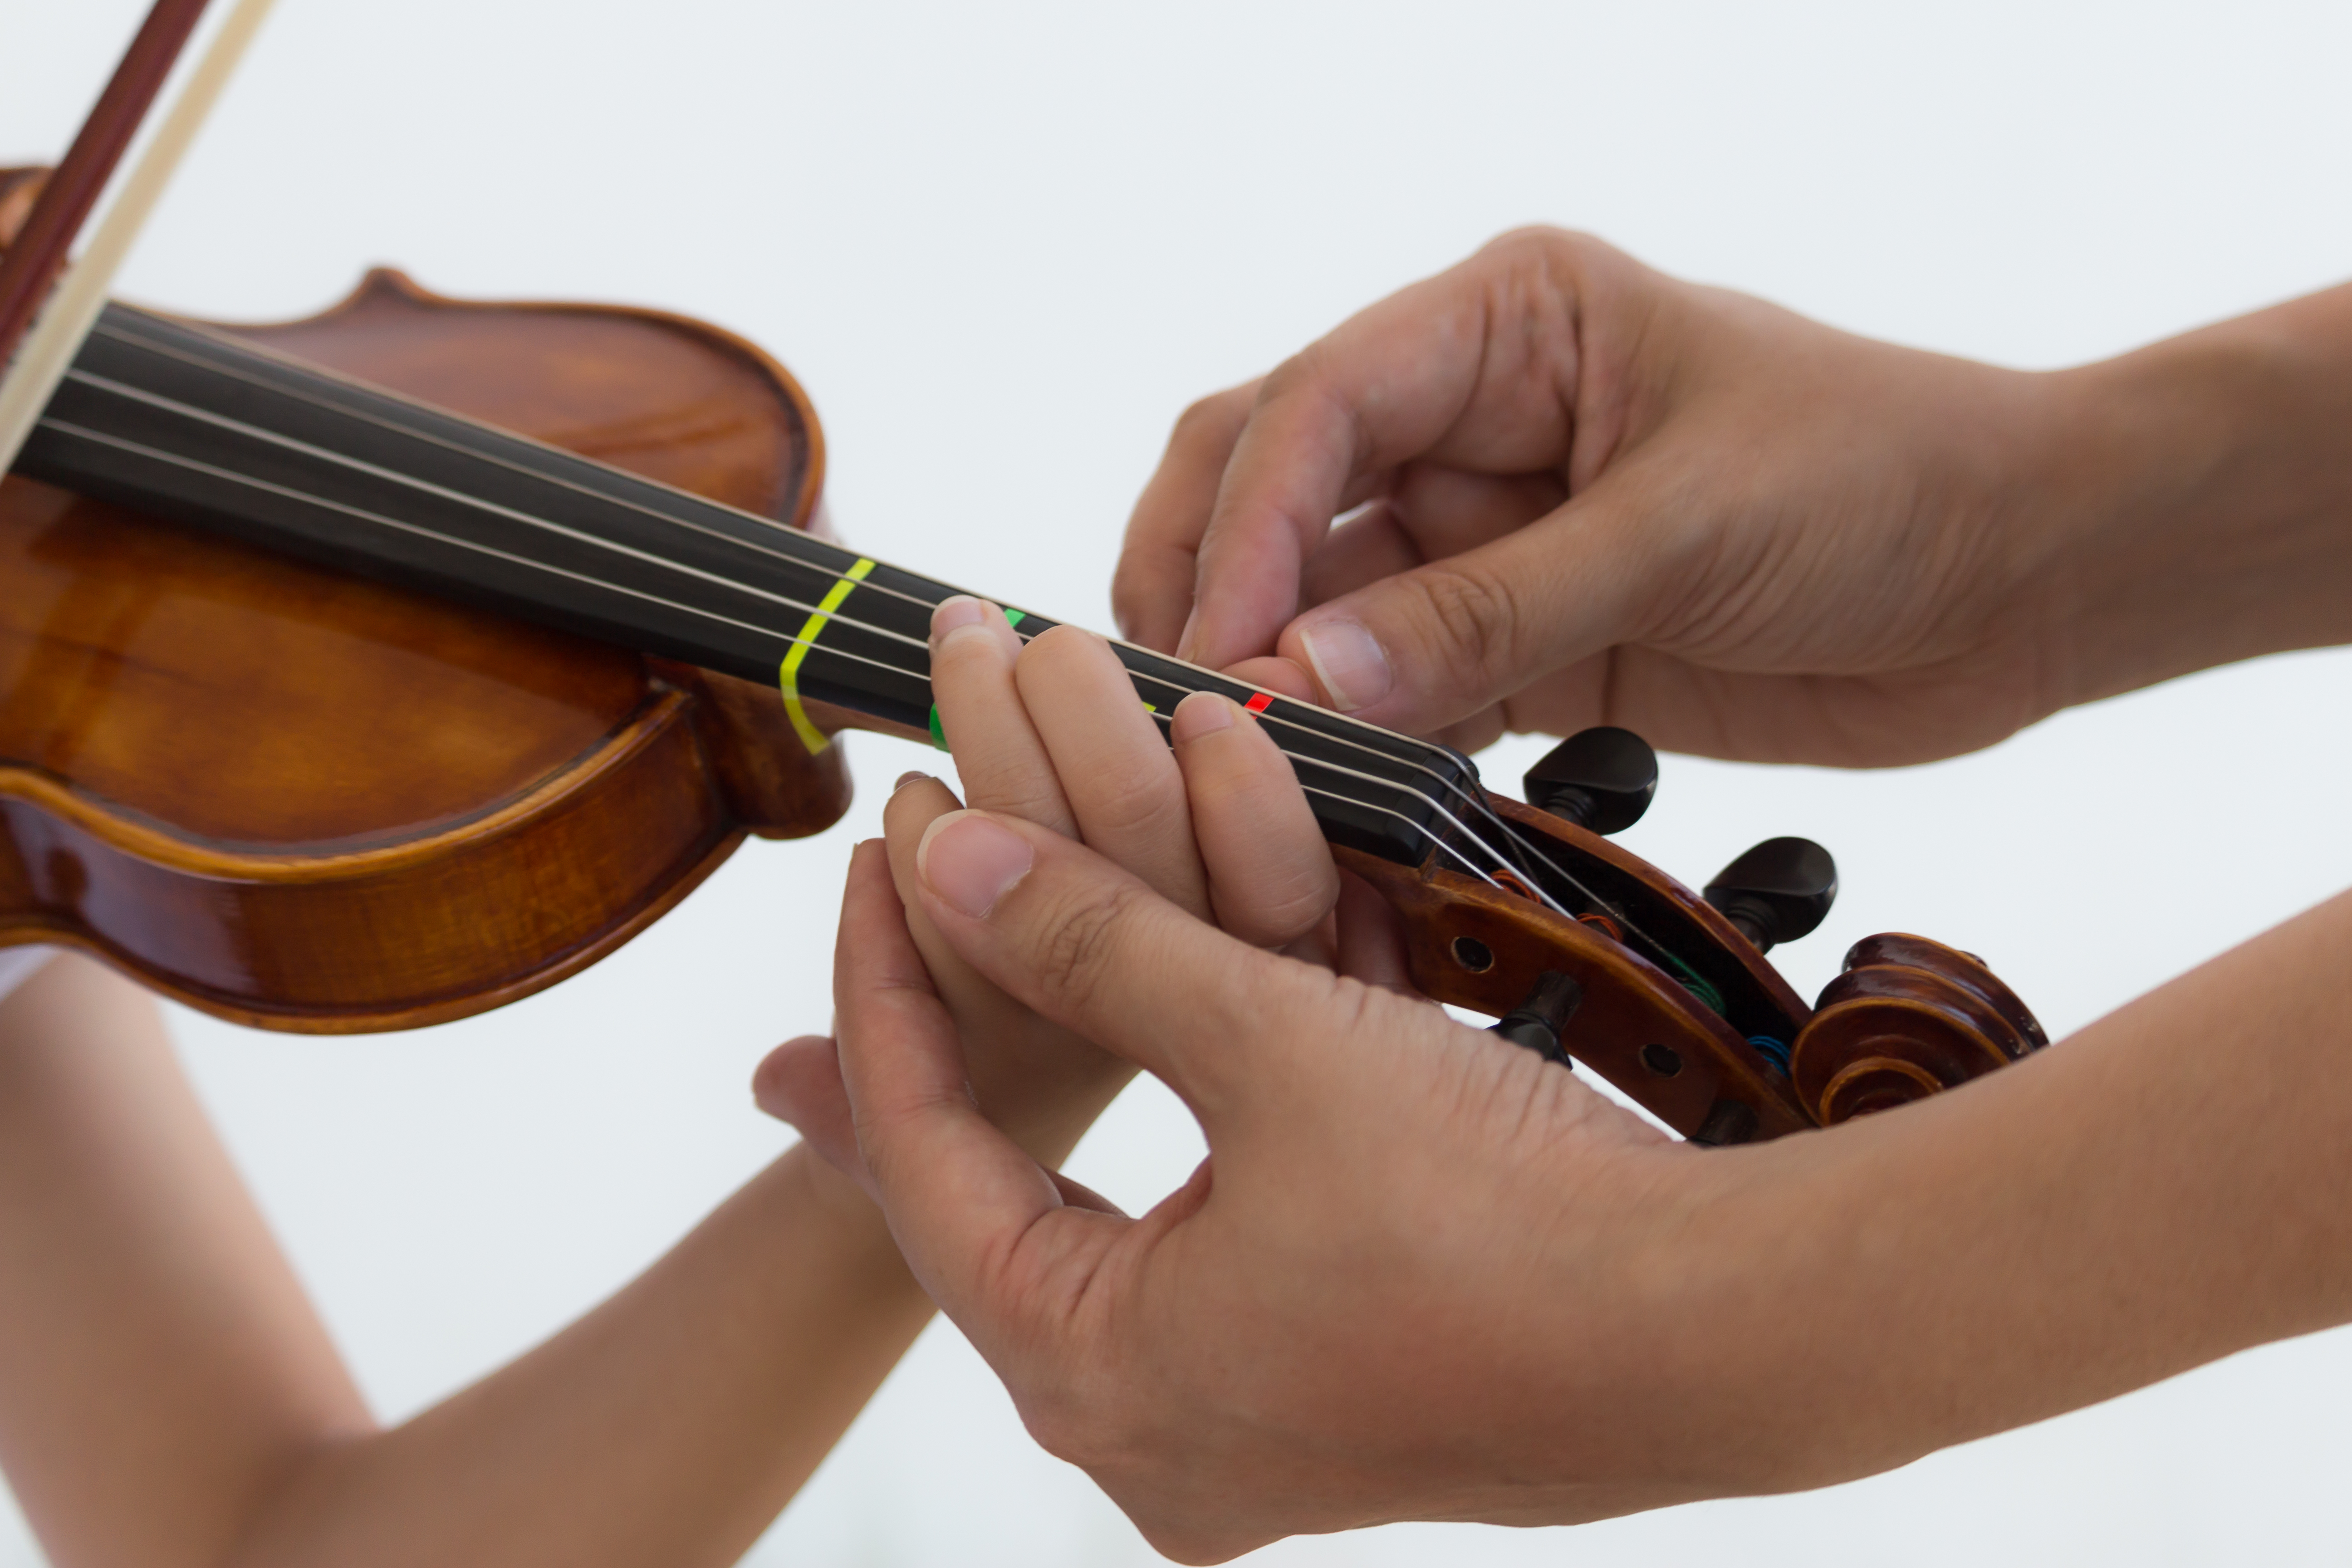 小提琴可以自學嗎？自學小提琴必須練習的指法大公開！ @
			
				張偉軒小提琴
			
		